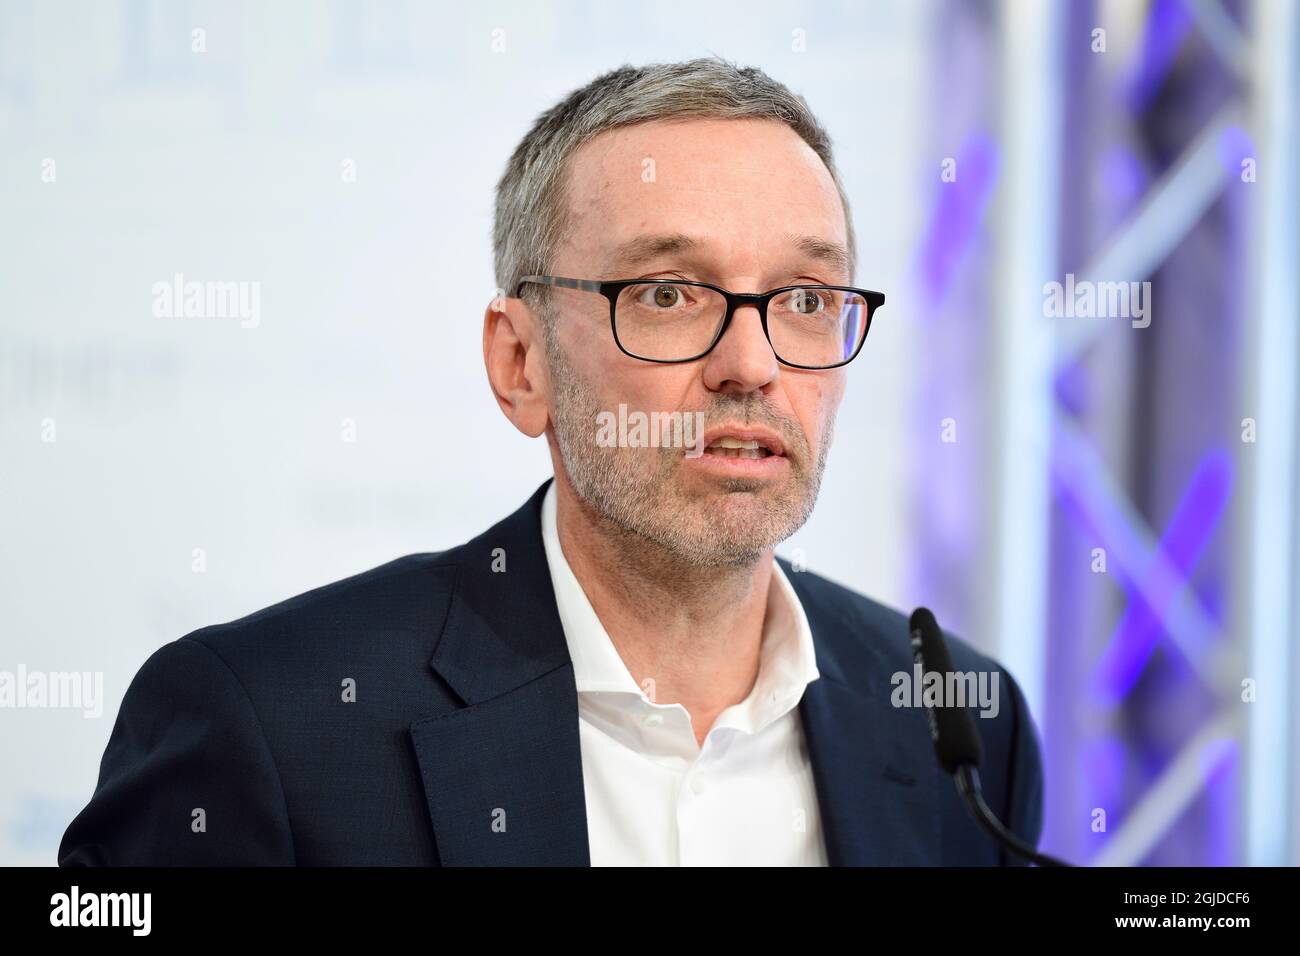 Vienne, Autriche. 9 septembre 2021. Conférence de presse avec le Président du Parti fédéral du FPÖ Herbert Kickl. Sujet : mesures Corona. Banque D'Images